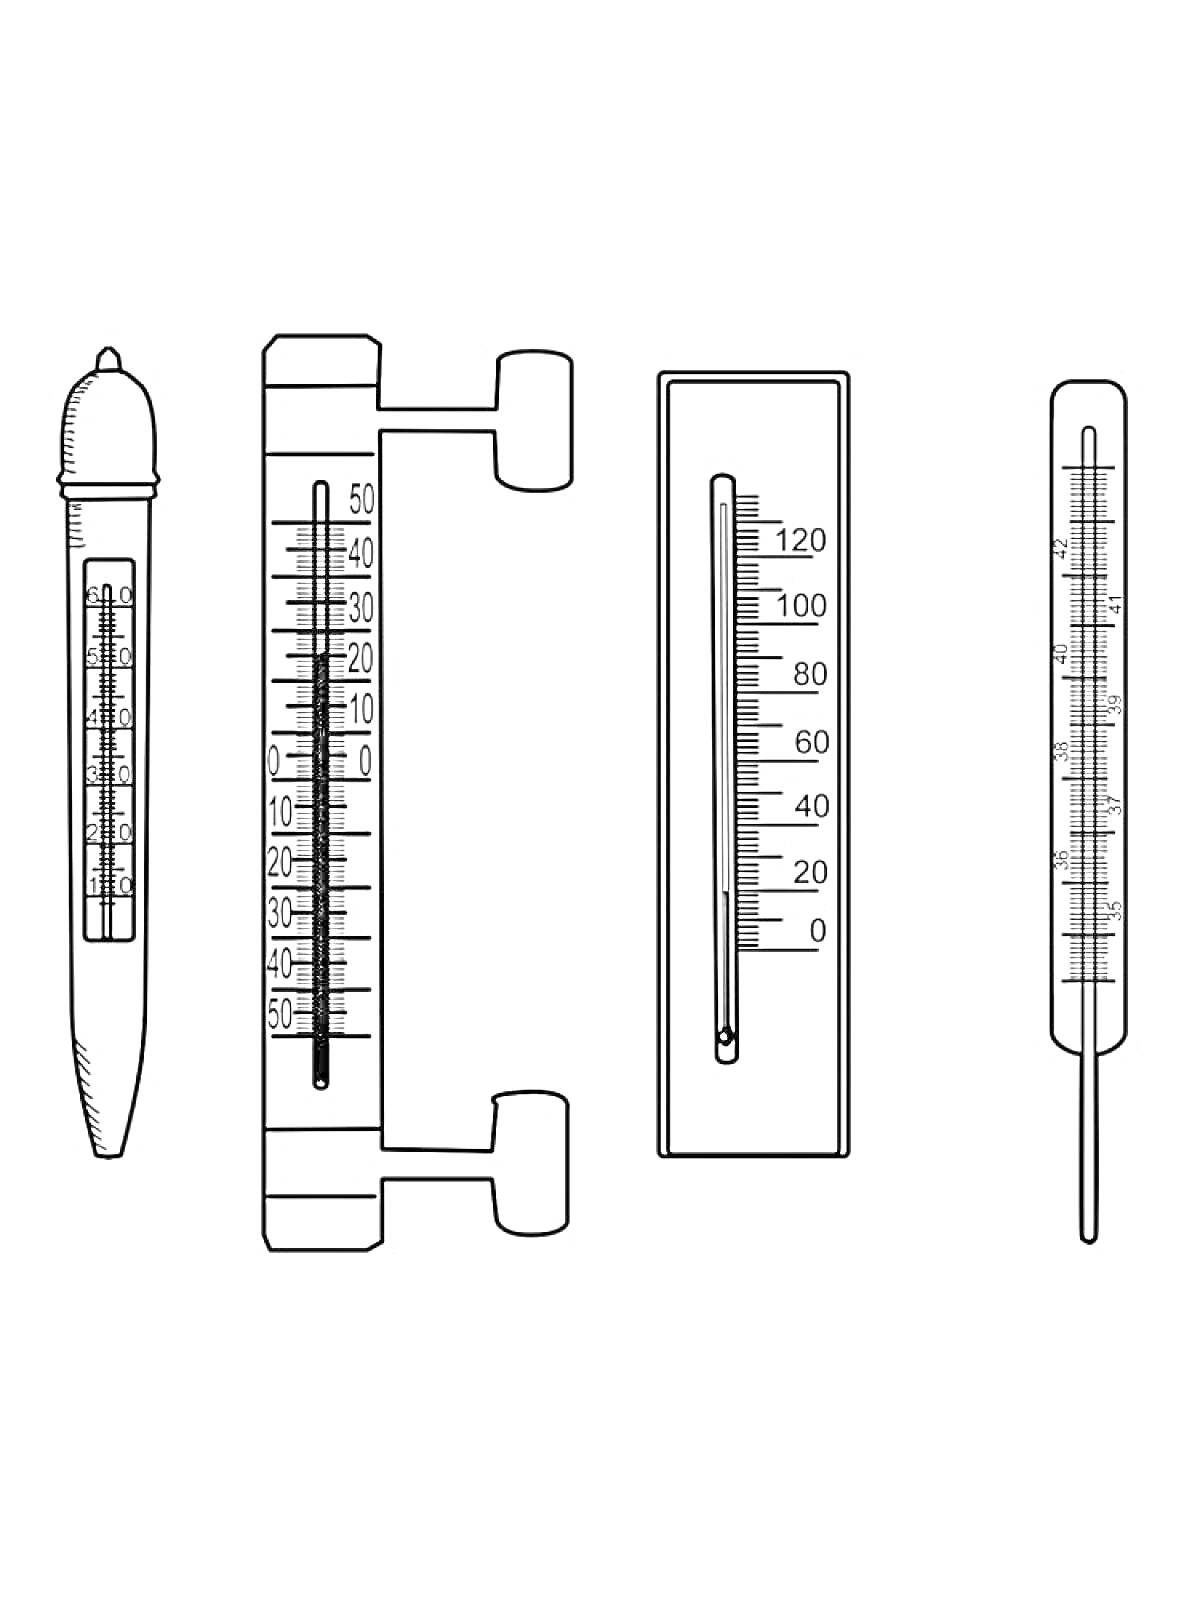 Раскраска Четыре градусника различных типов: медицинский ртутный, оконный, барометрический и классический стеклянный